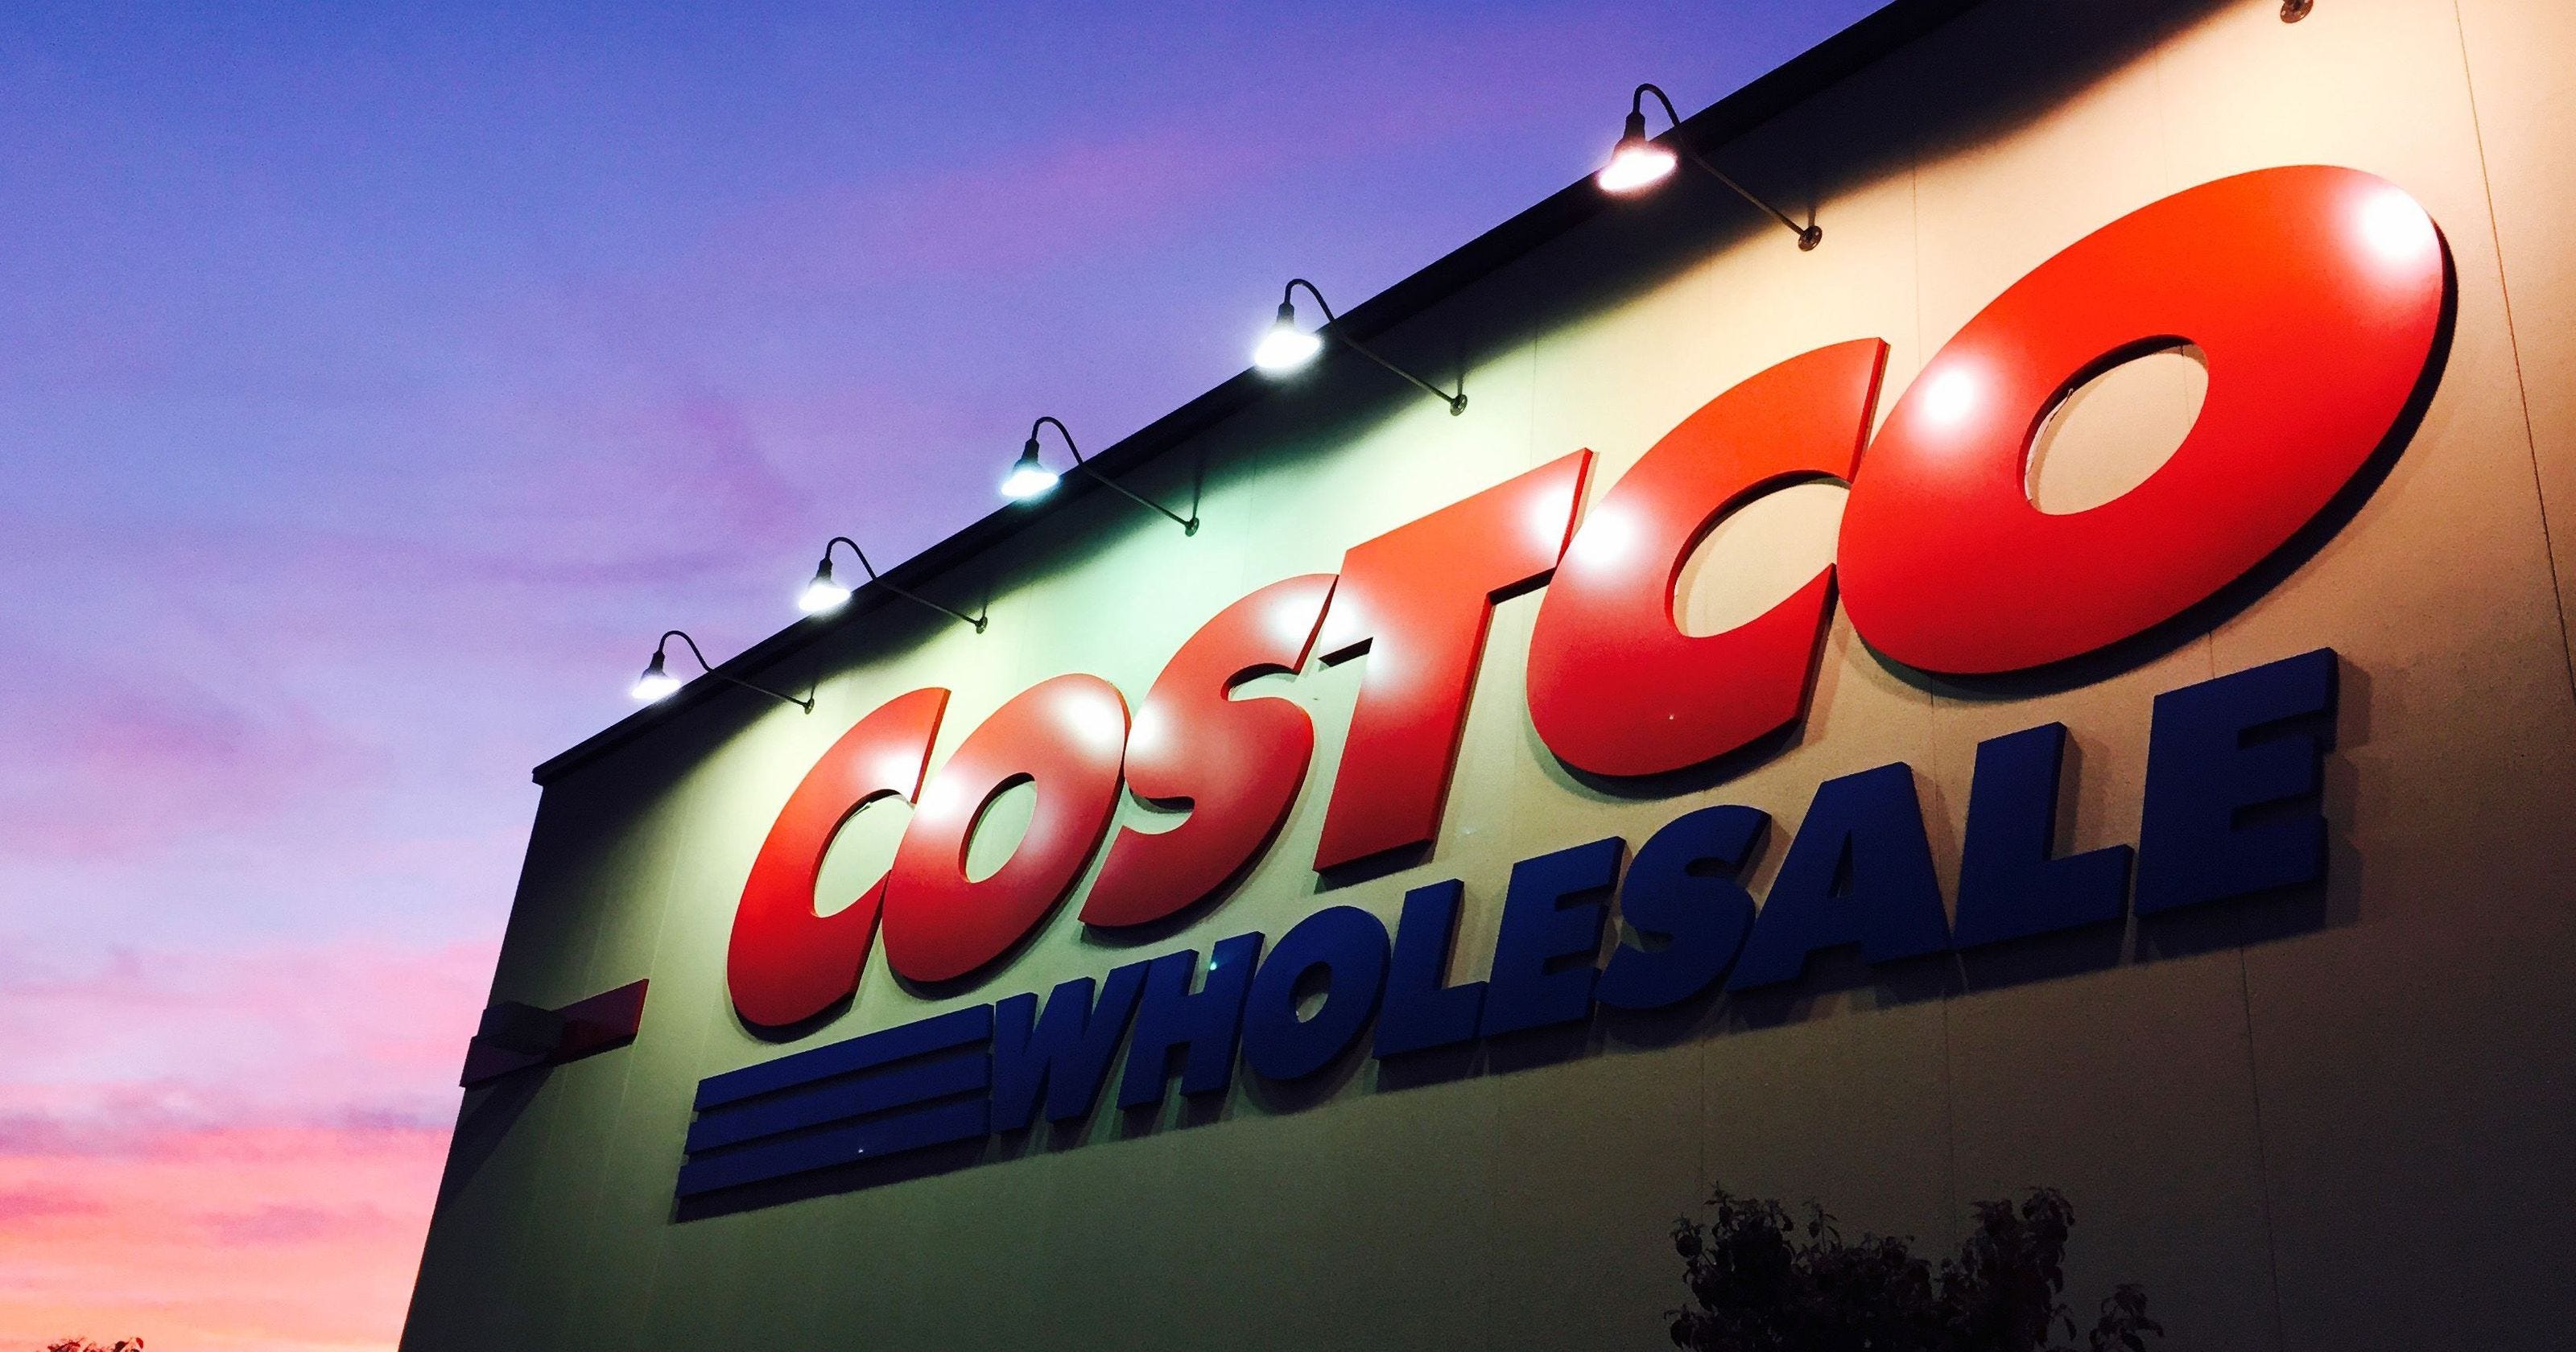 Costco Beats Amazon in CSAT for Online 